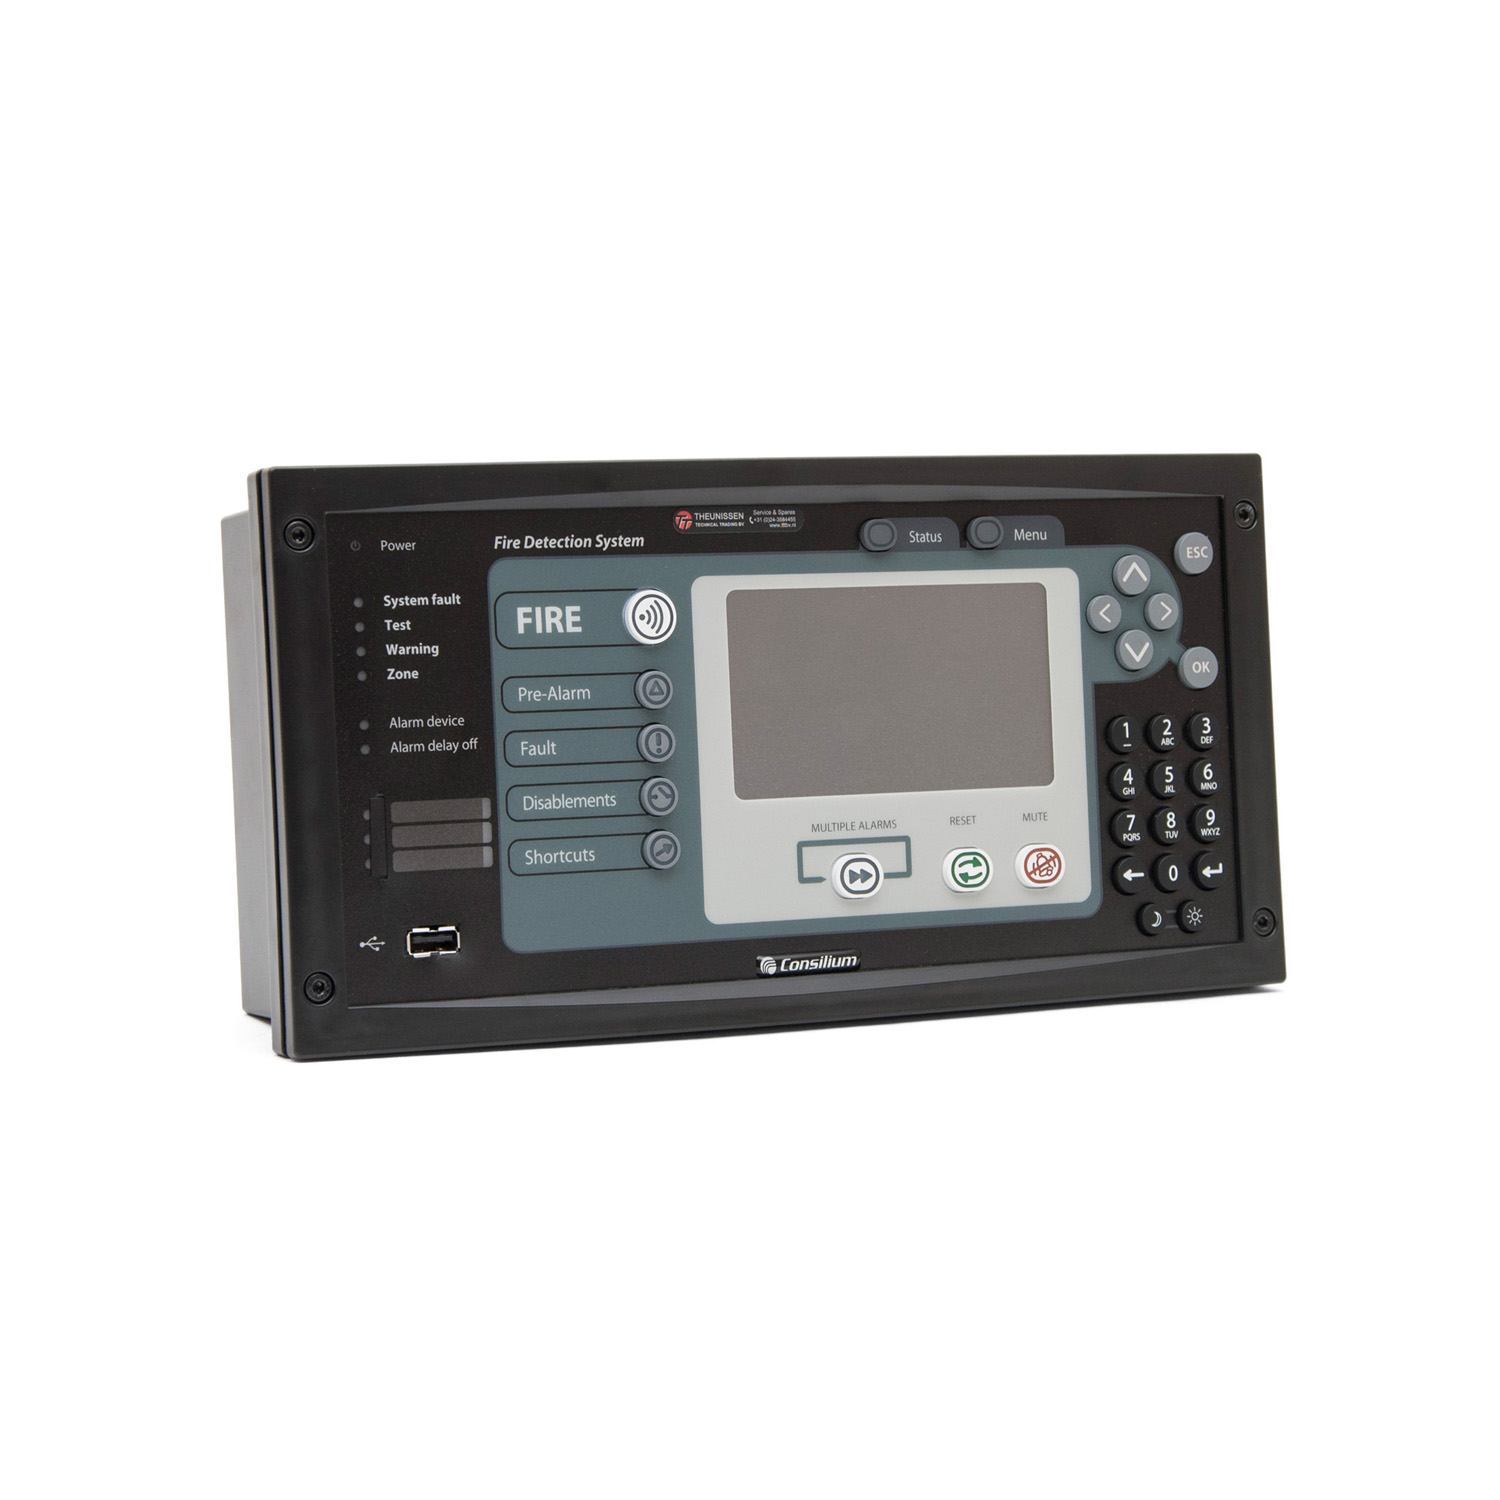 5100195-20A Control panel for Consilium CCP system